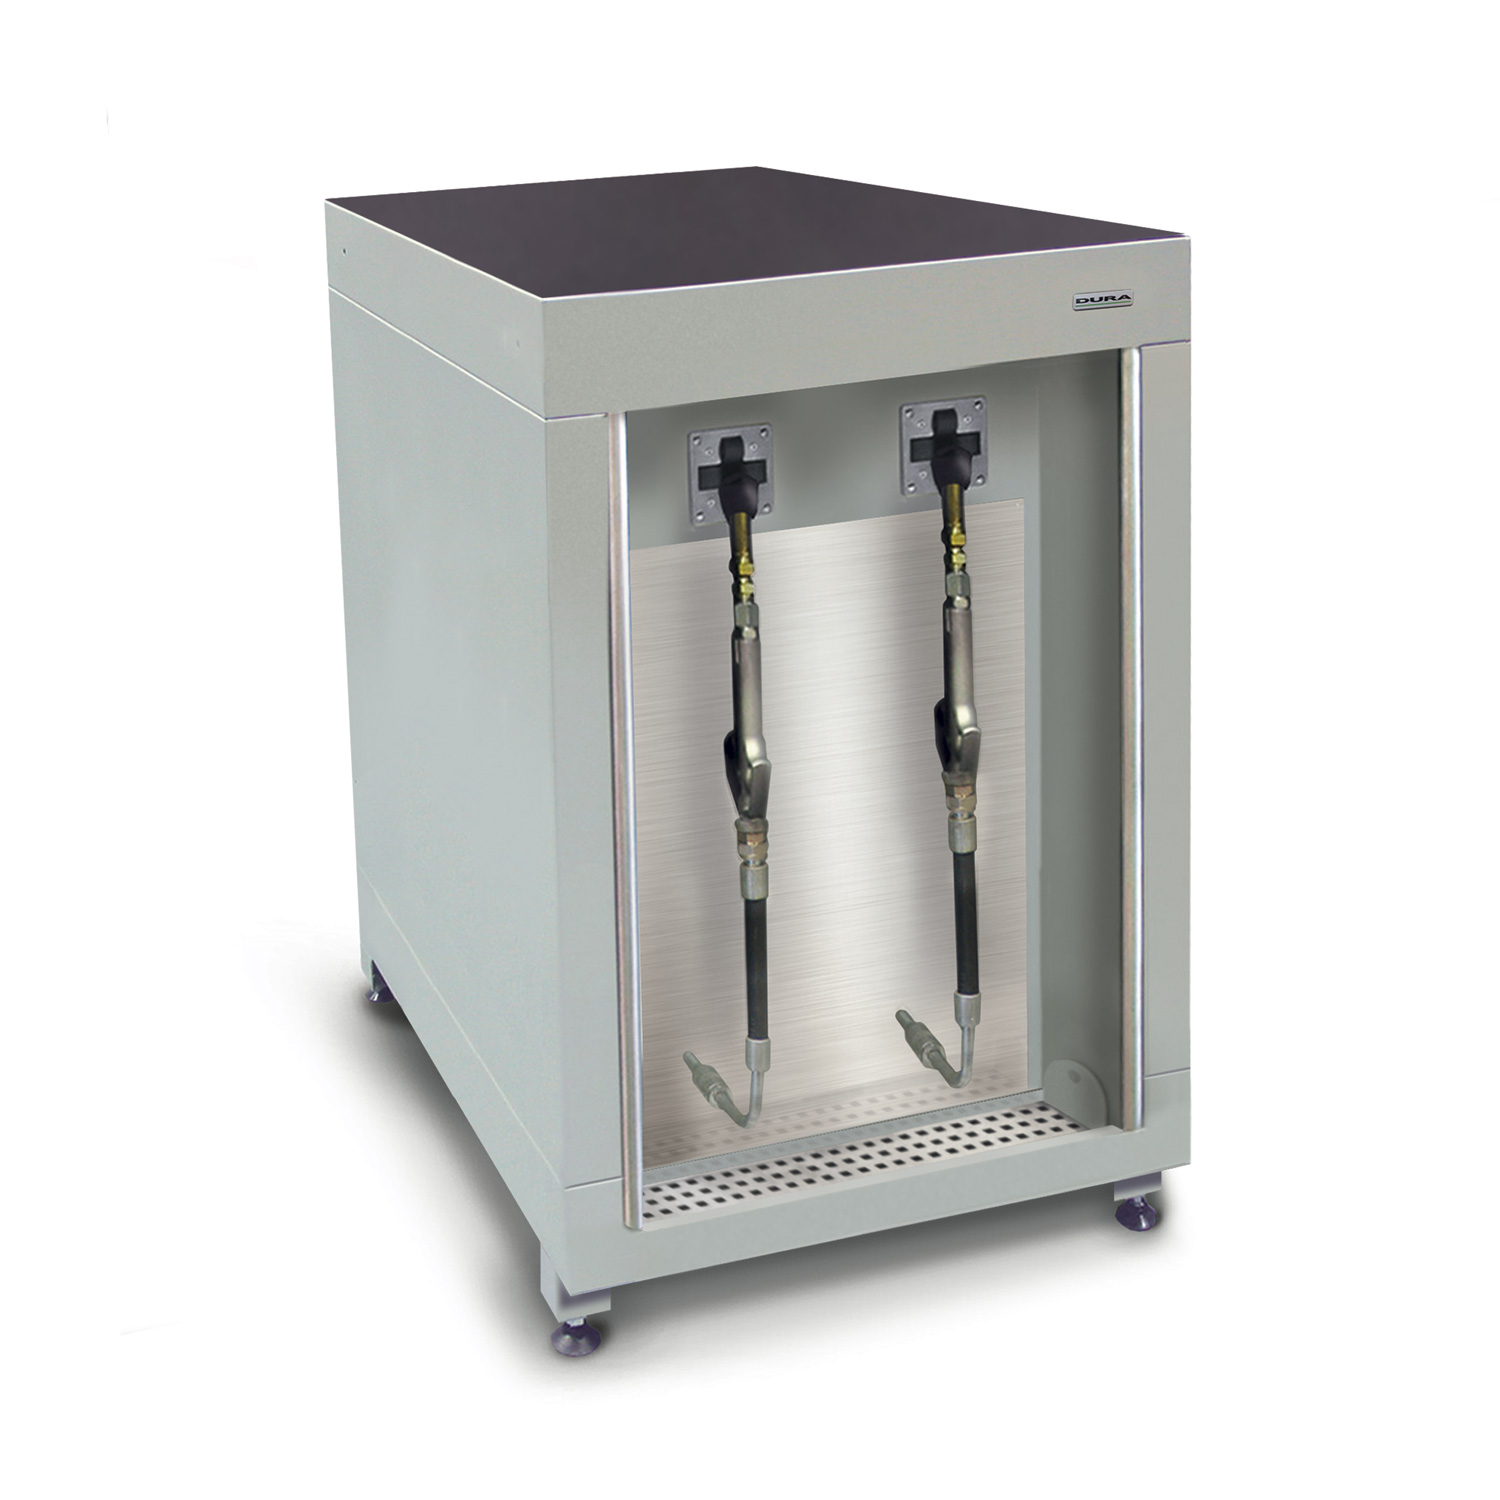 600mm Low-level fluid management cabinet (750mm depth)